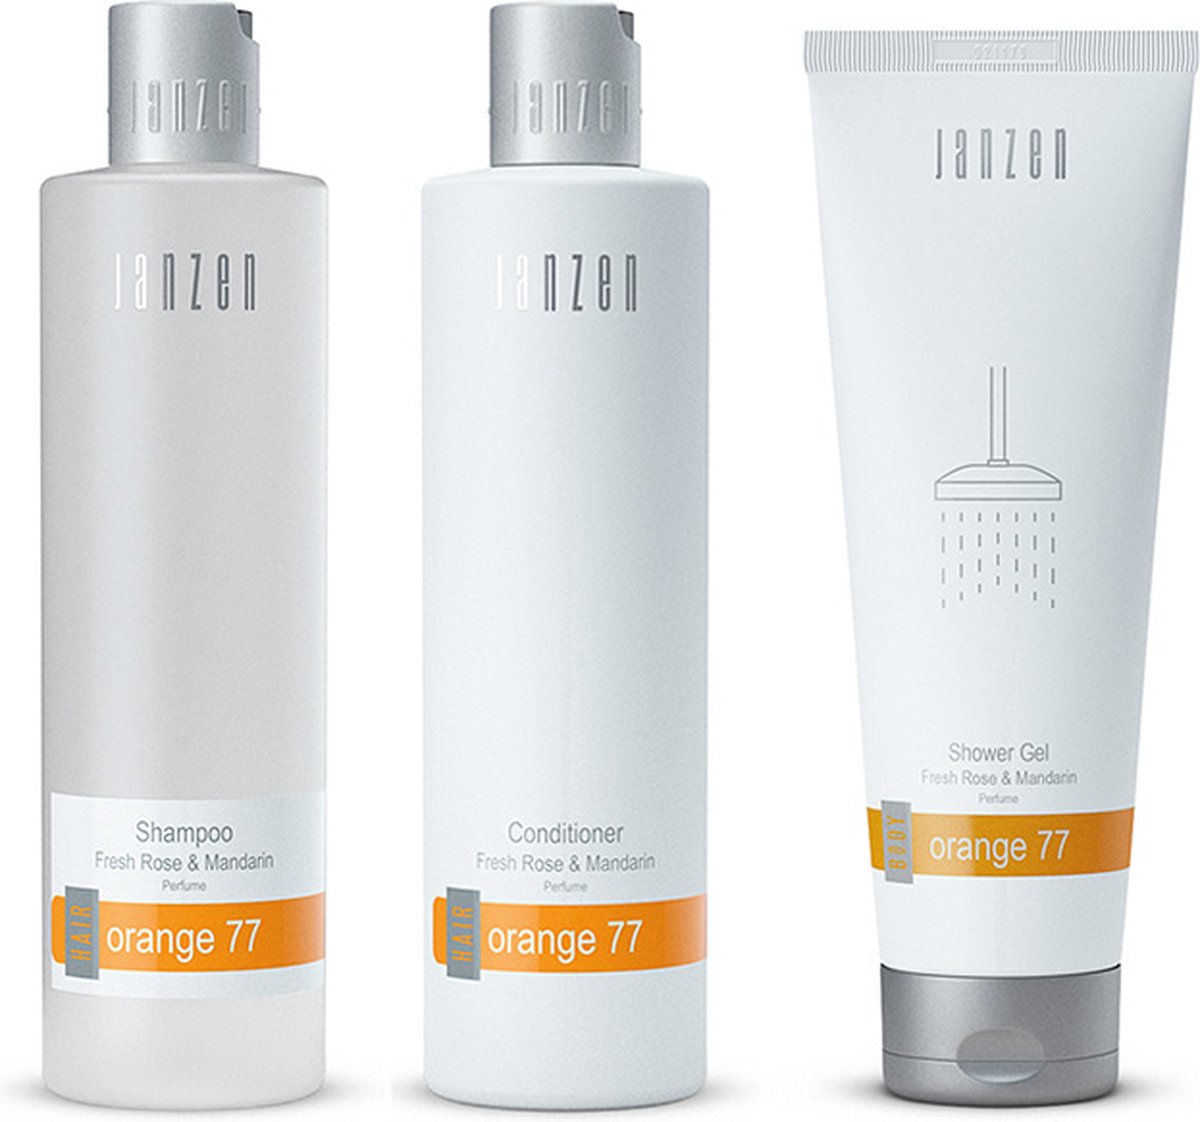 Janzen Set Orange 77 - Shampoo + Conditioner + Showergel